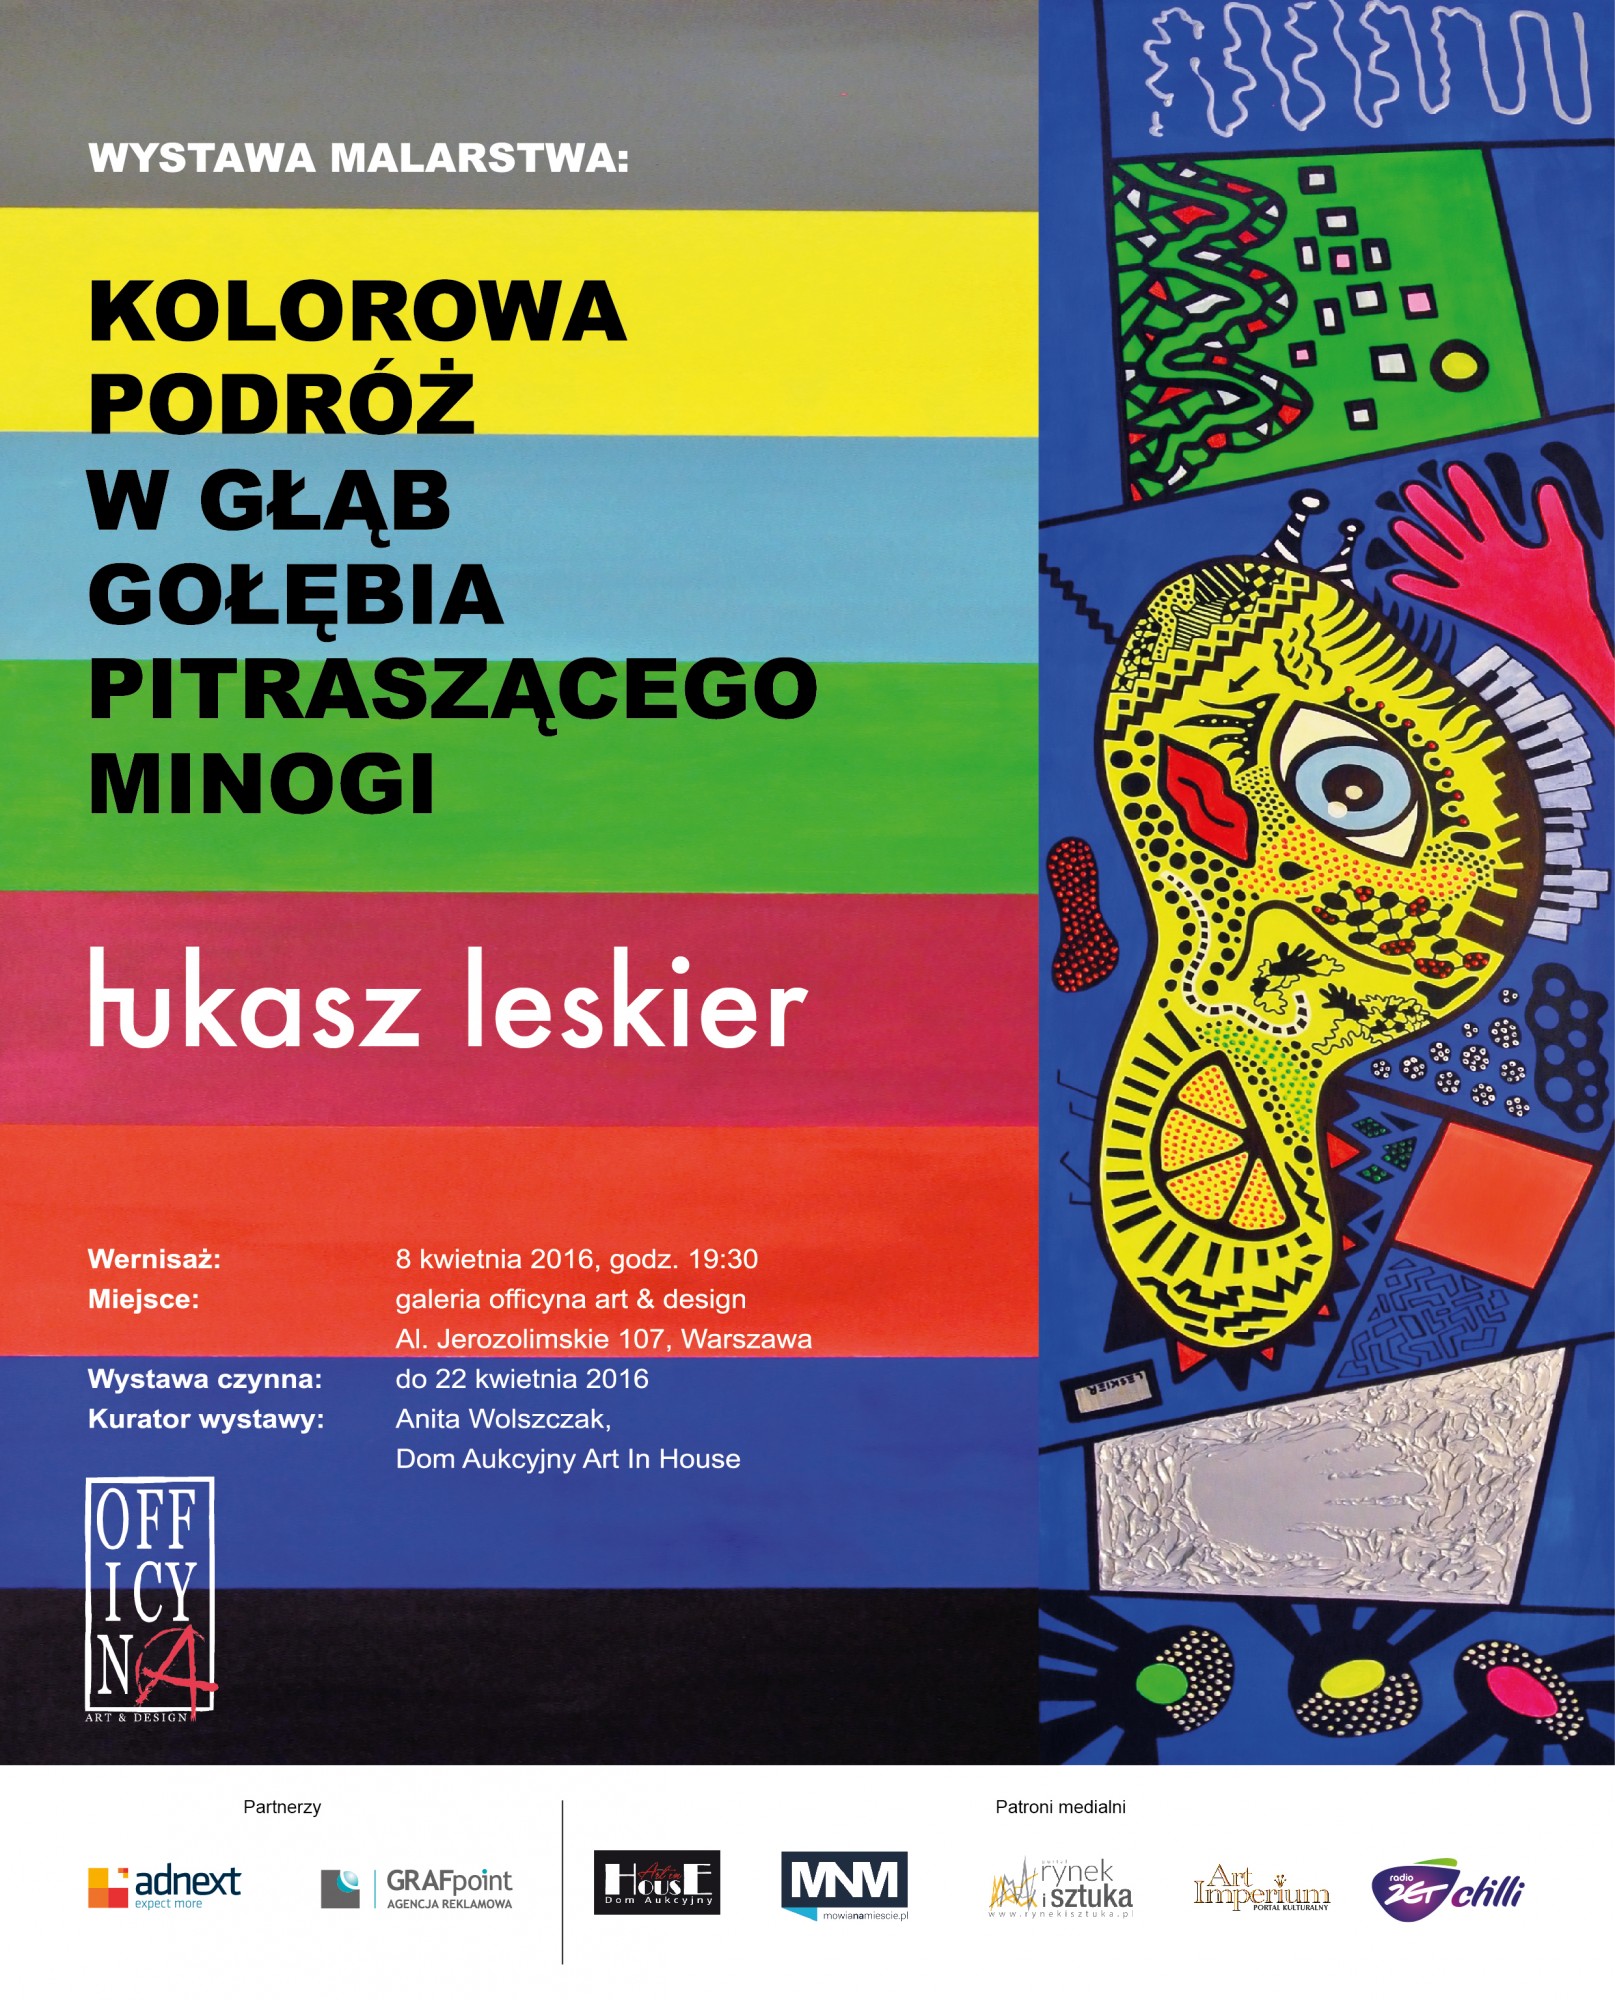 Wernisaż wystawy malarstwa Łukasza Leskiera: 